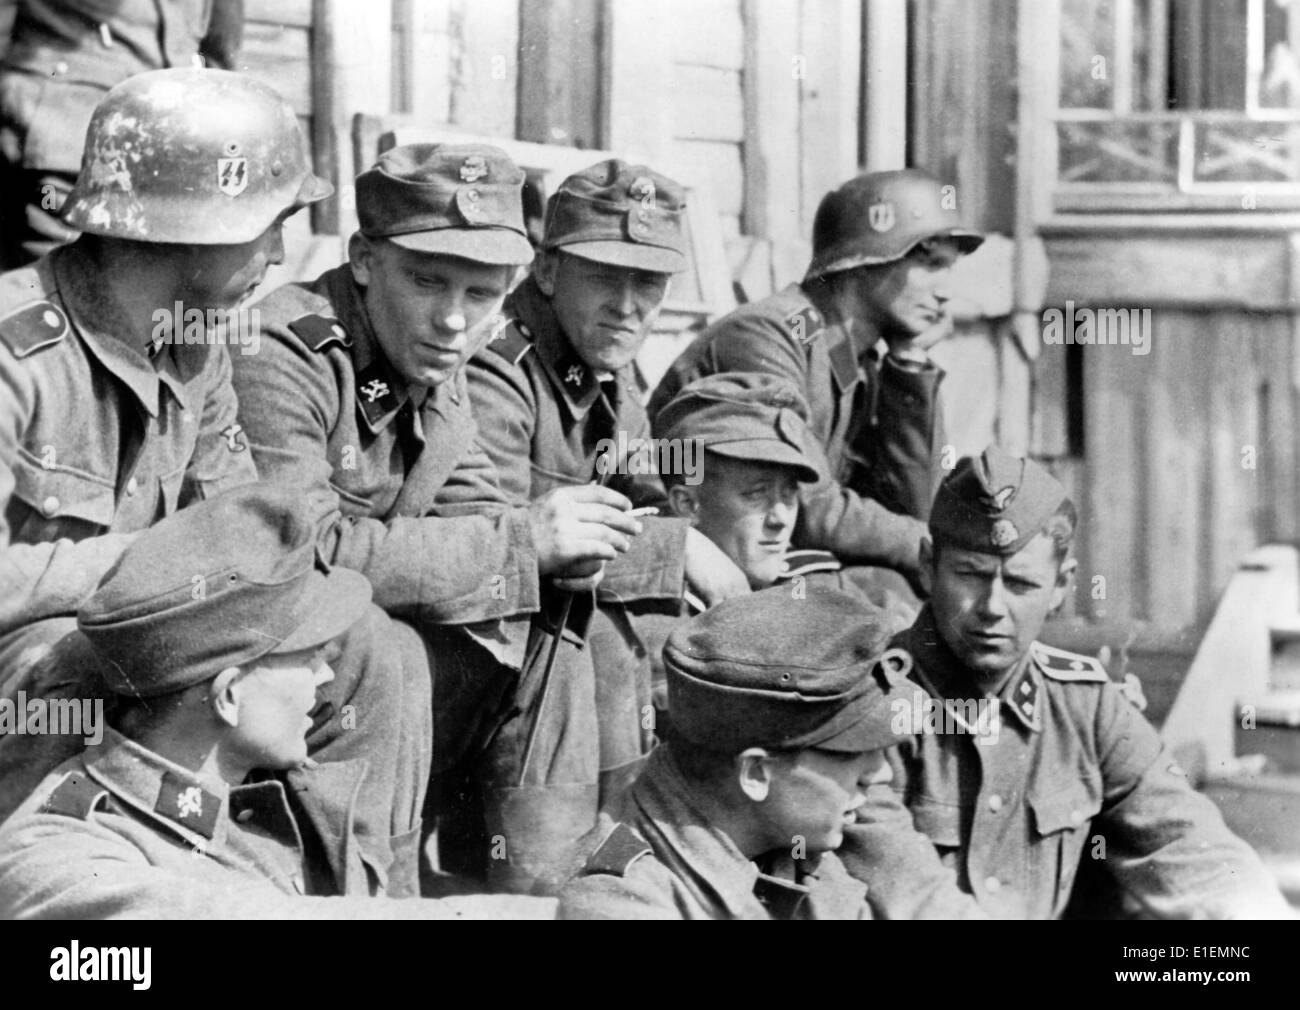 La photo d'un reportage nazi montre un groupe de soldats norvégiens, la Légion Norske du Waffen-SS dans la lutte contre le bolchevisme, au Front de l'est en mai 1942. Fotoarchiv für Zeitgeschichtee - PAS DE SERVICE DE FIL Banque D'Images